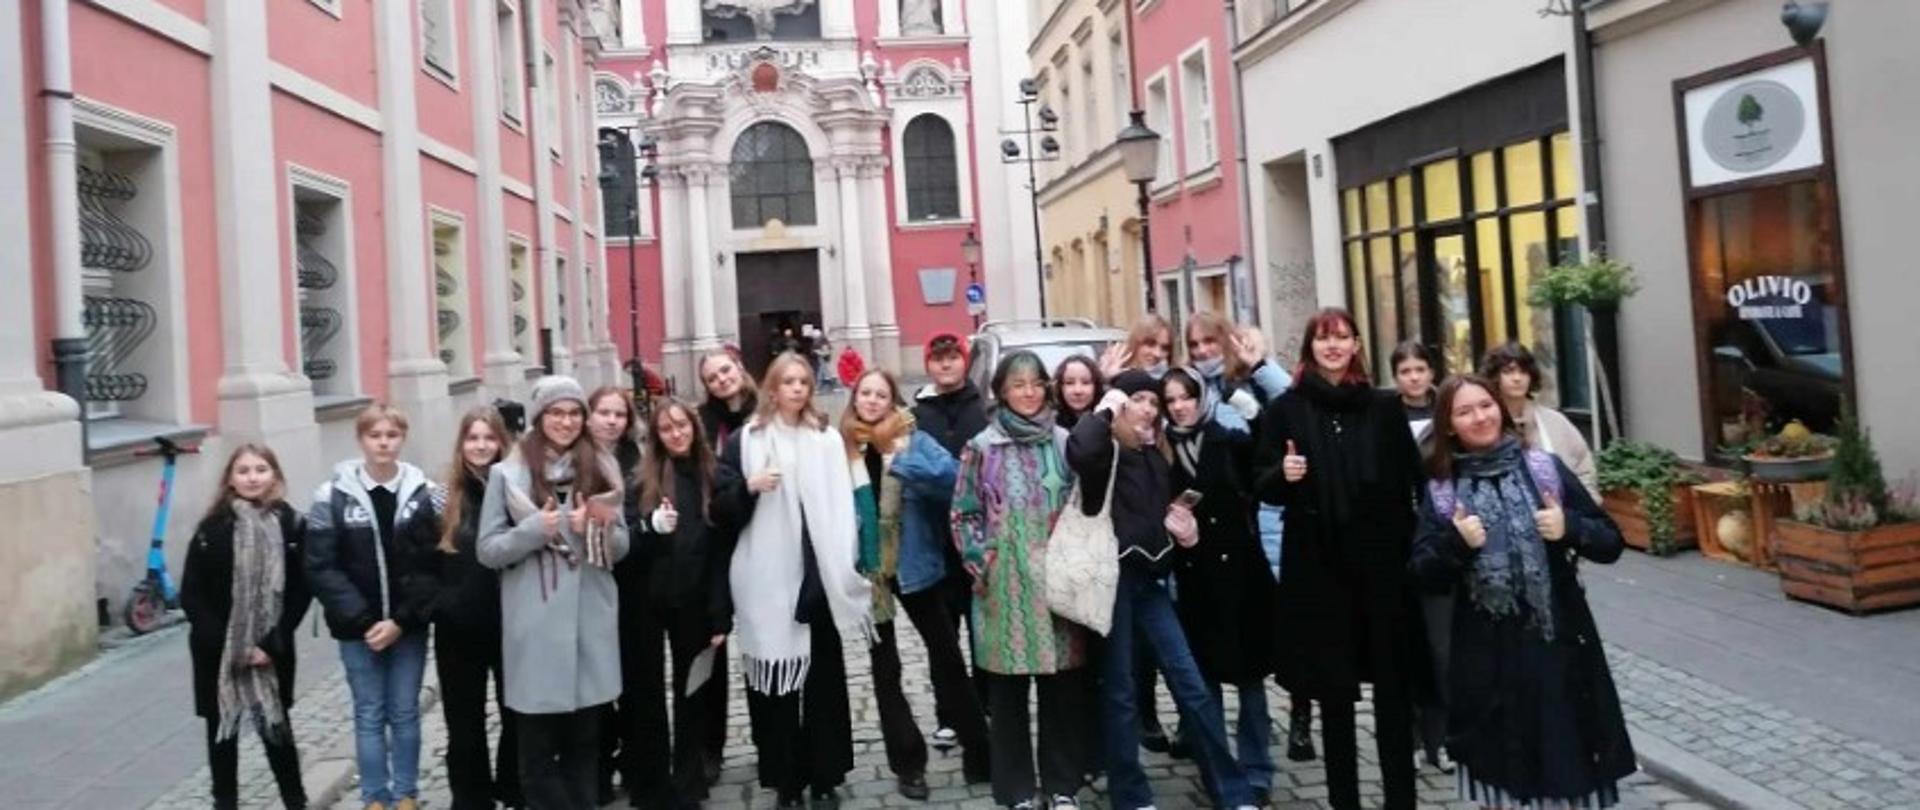 Zdjęcie kolorowe. Grupa uczniów stojących na brukowanej ulicy. W tle barokowa fasada kościoła.